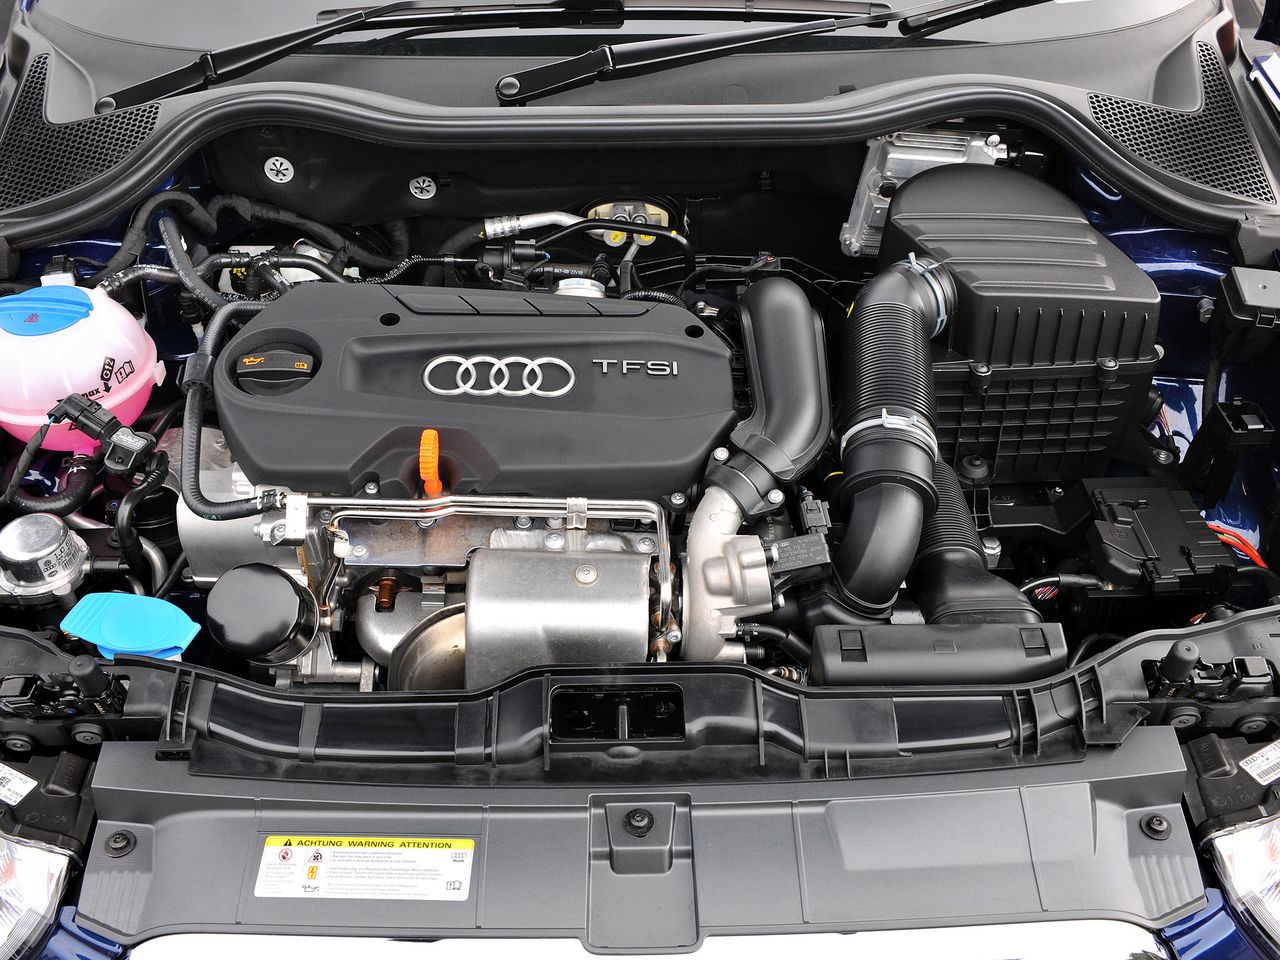 Najmocniejsza wersja silnika 1.4 TSI napędza Audi A1. Rozwija 185 KM.